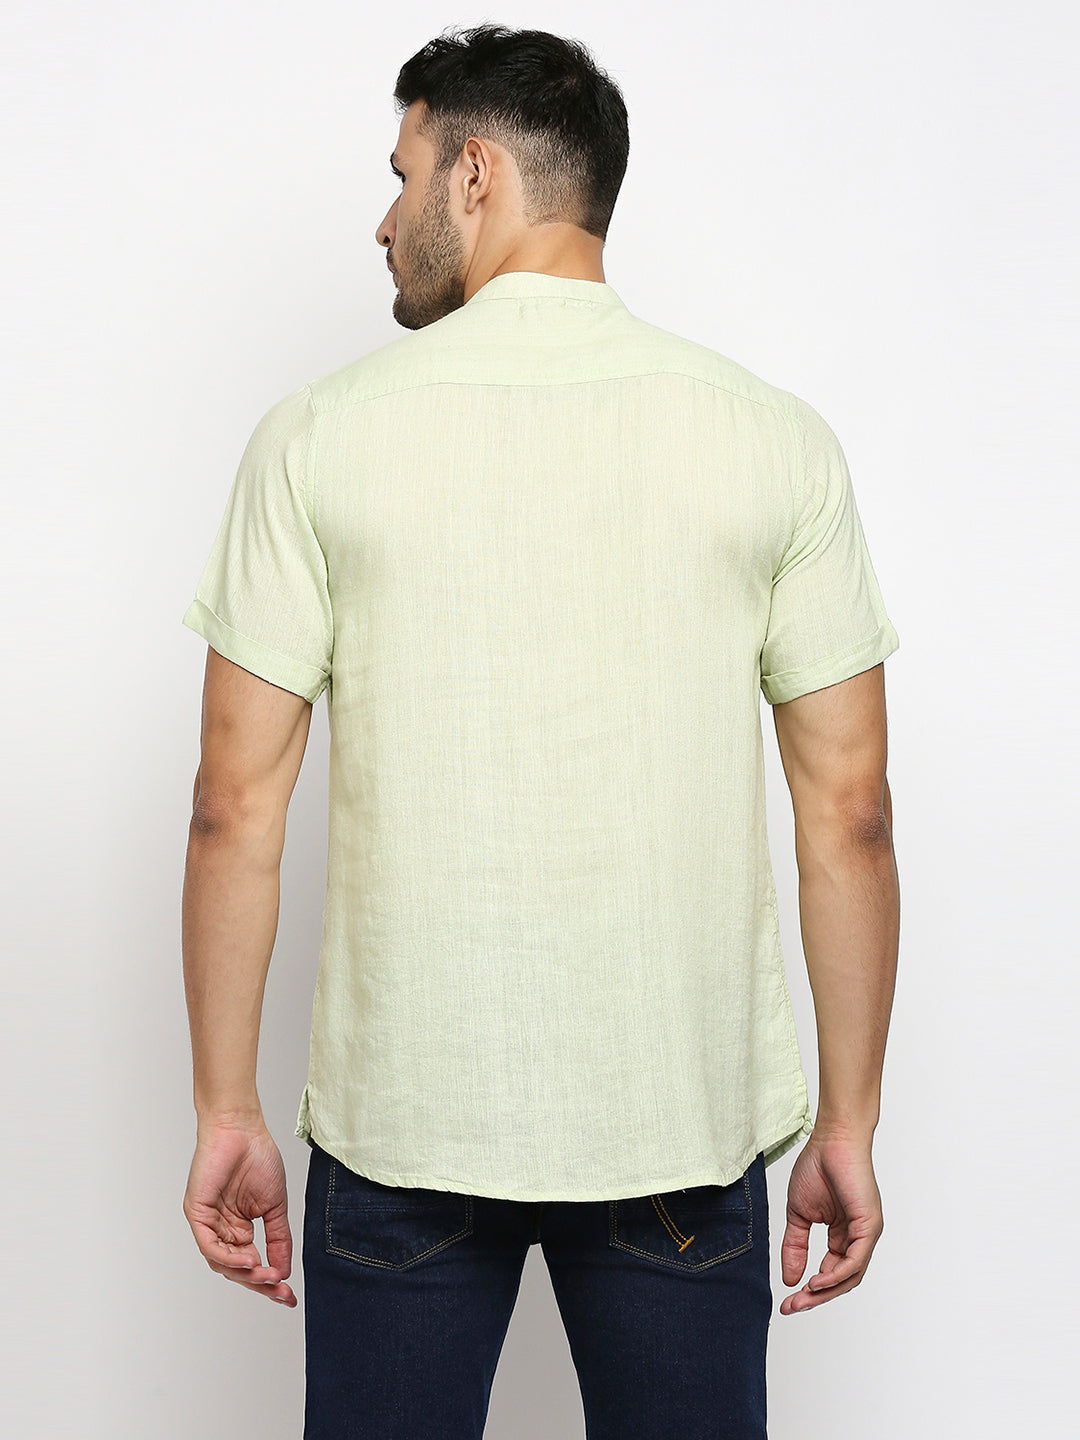 Charmer Collar Band Green Shirt